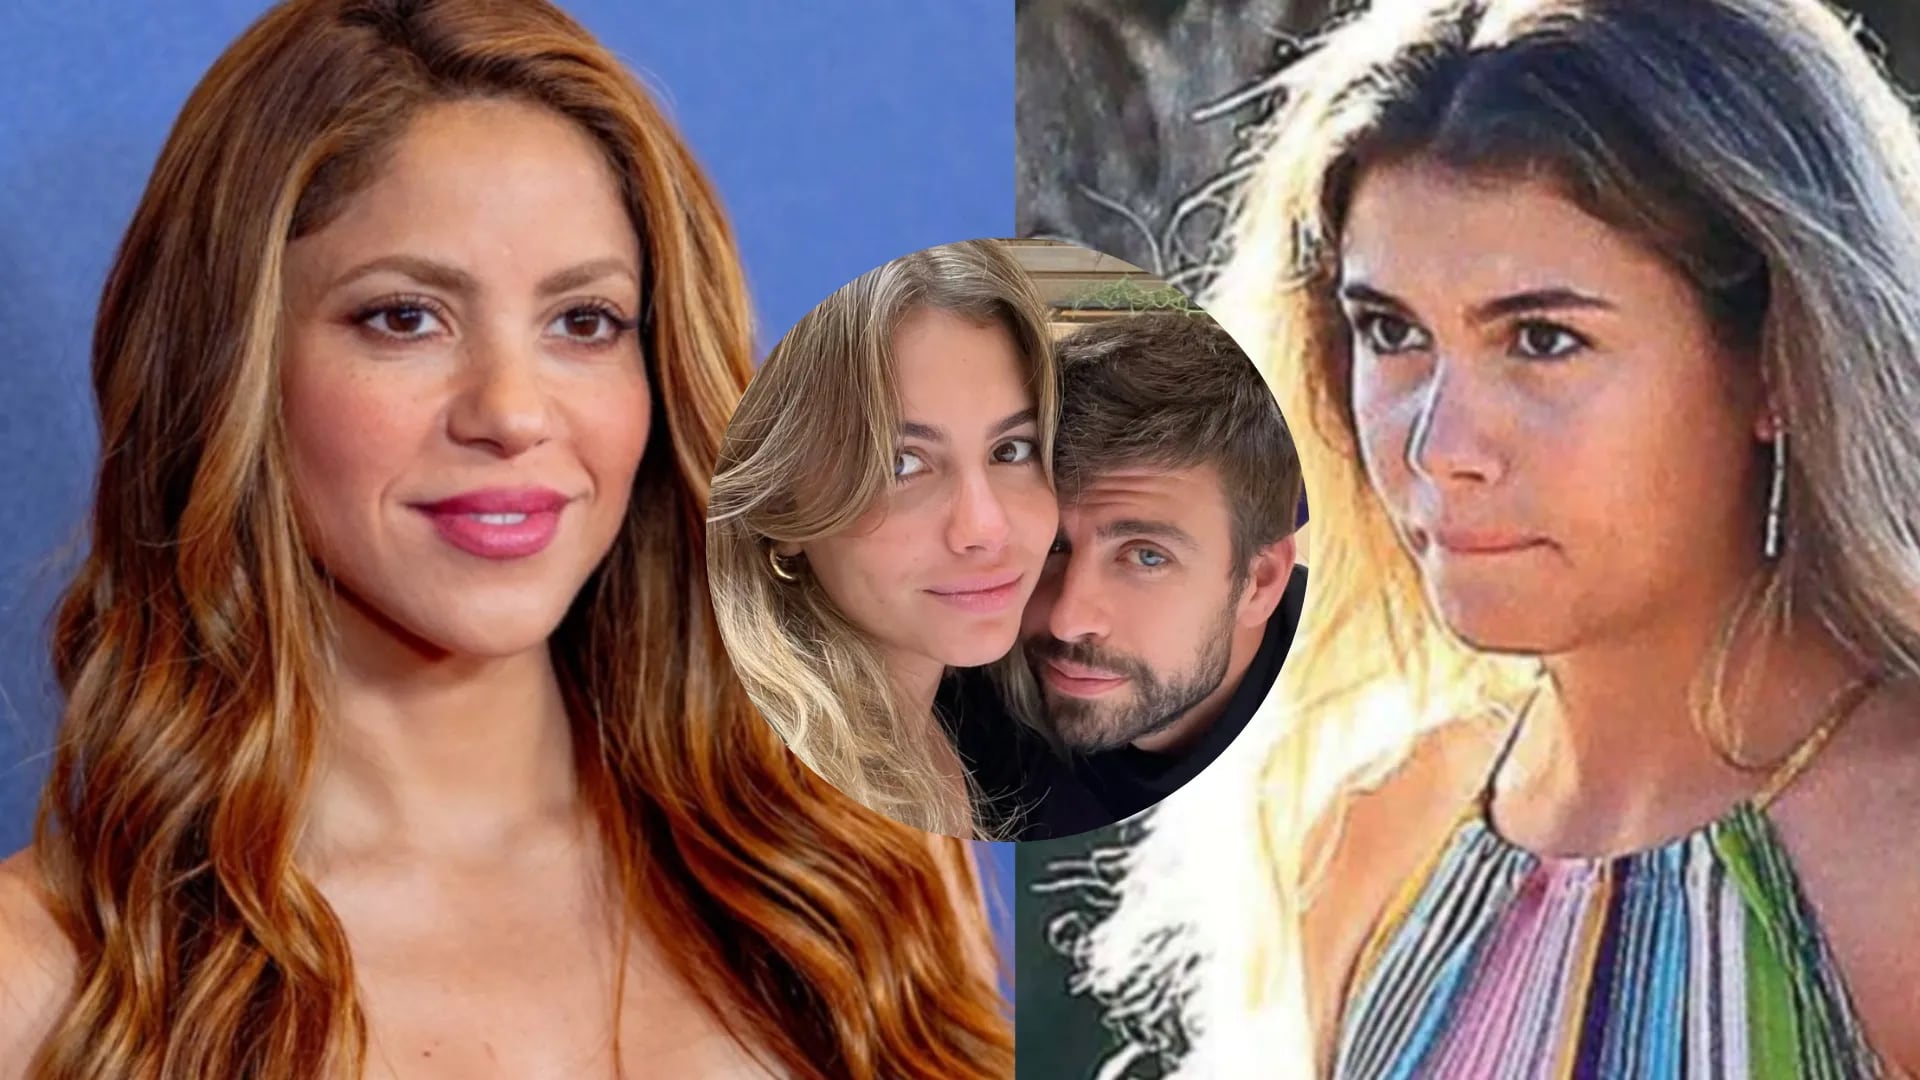 Se supo el escandaloso apodo de Shakira a Clara Chía Marti, la novia de Gerard Piqué.